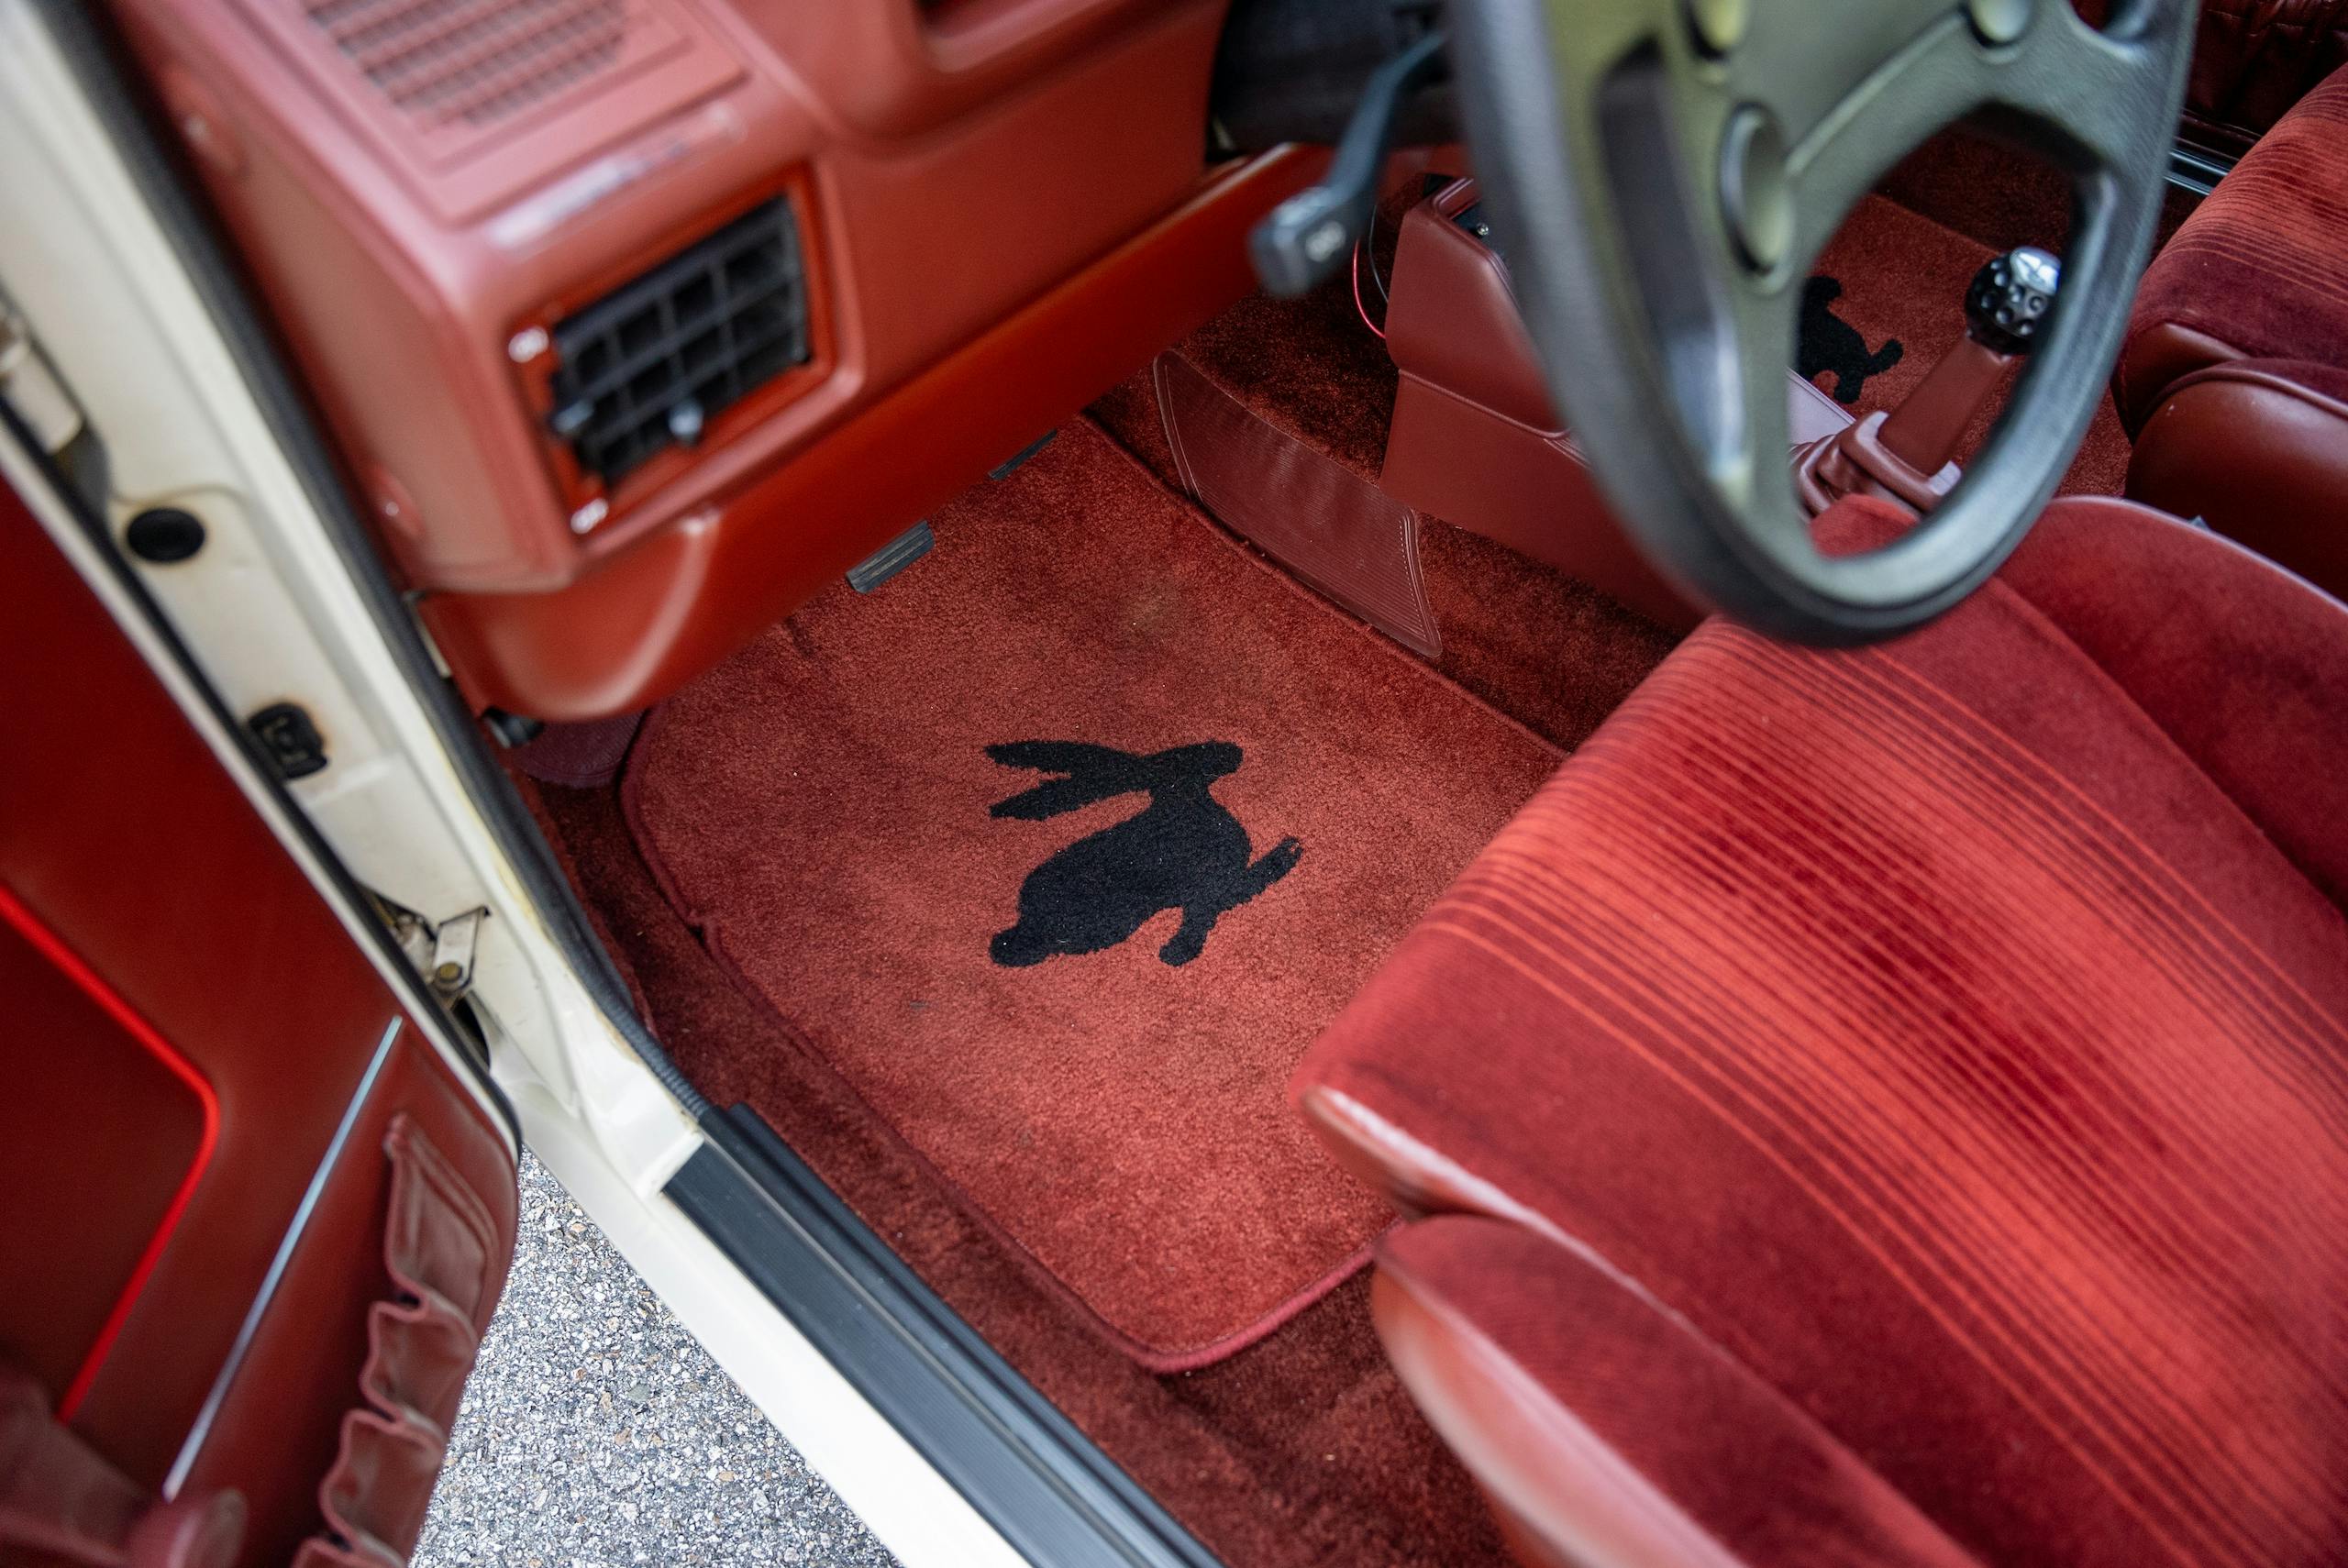 1983 Volkswagen Rabbit GTI Callaway hot hatch interior rabbit mat